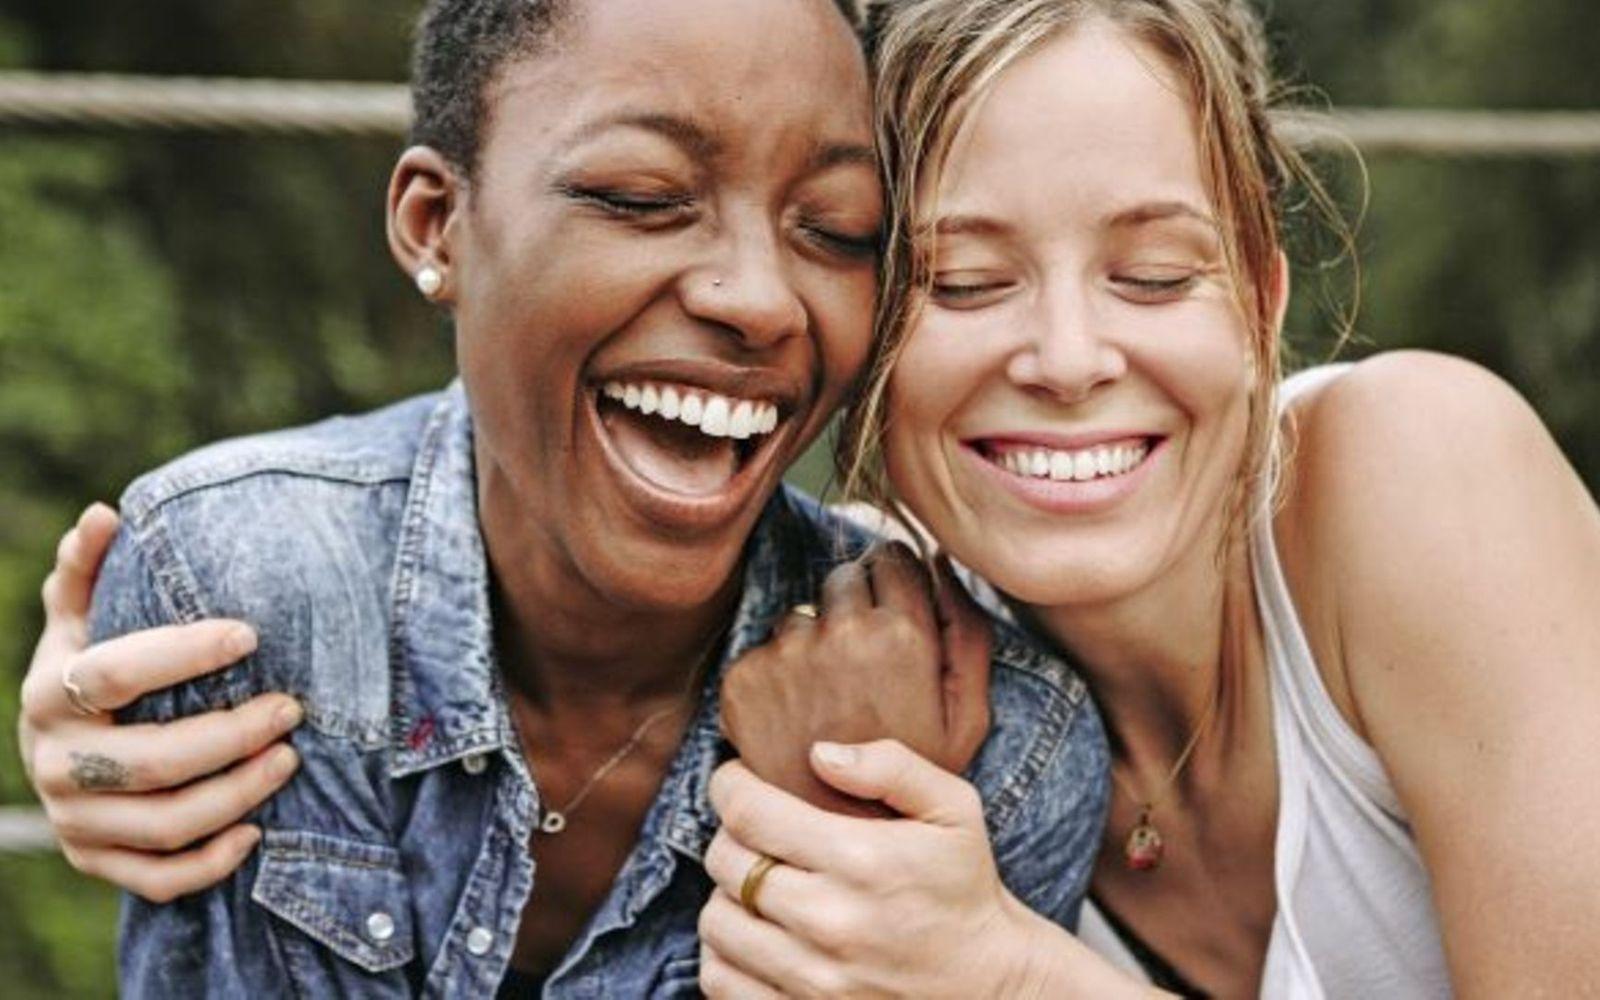 Gesundheit beginnt im Kopf: Zwei Frauen, die sich in den Arm nehmen und lächeln.